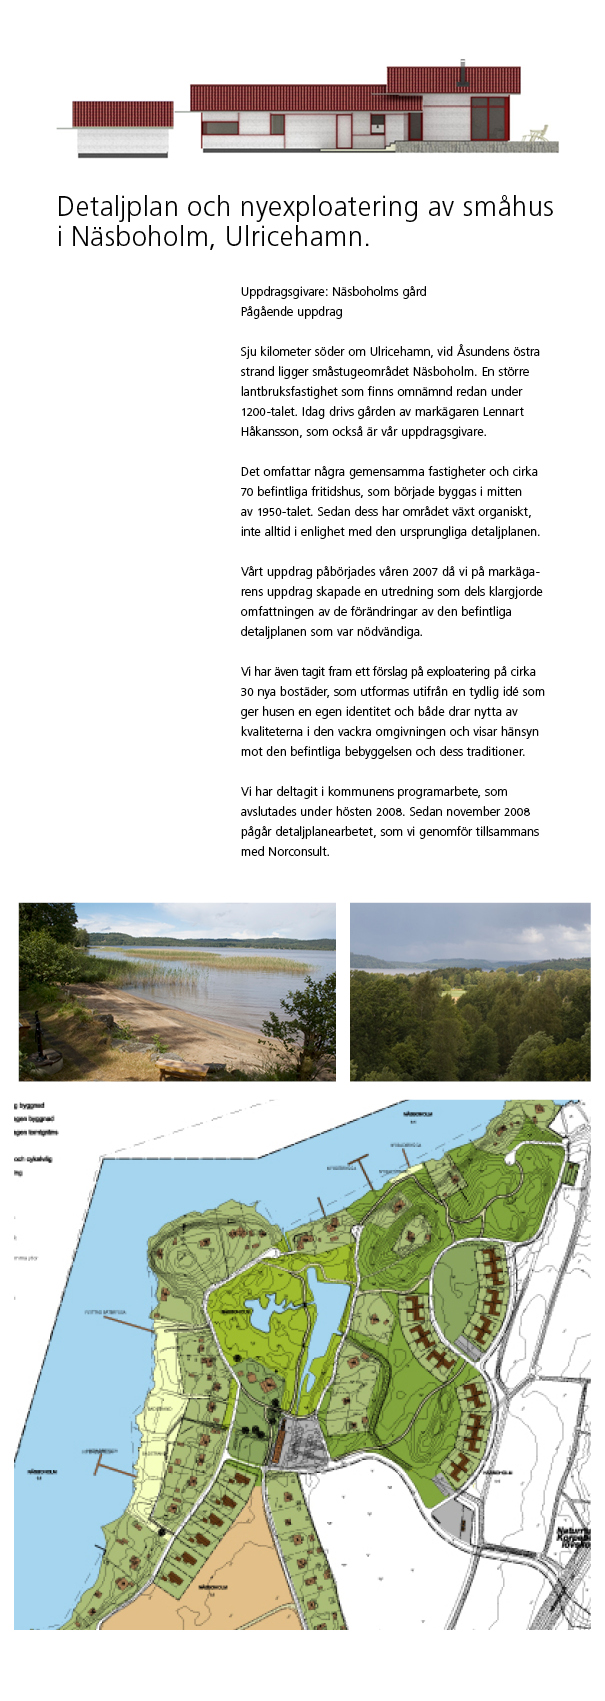 Sju kilometer söder om Ulricehamn, vid Åsundens östra strand ligger småstugeområdet Näsboholm. Helhetshus har tagit fram förslag på exploatering på markägarens uppdrag.